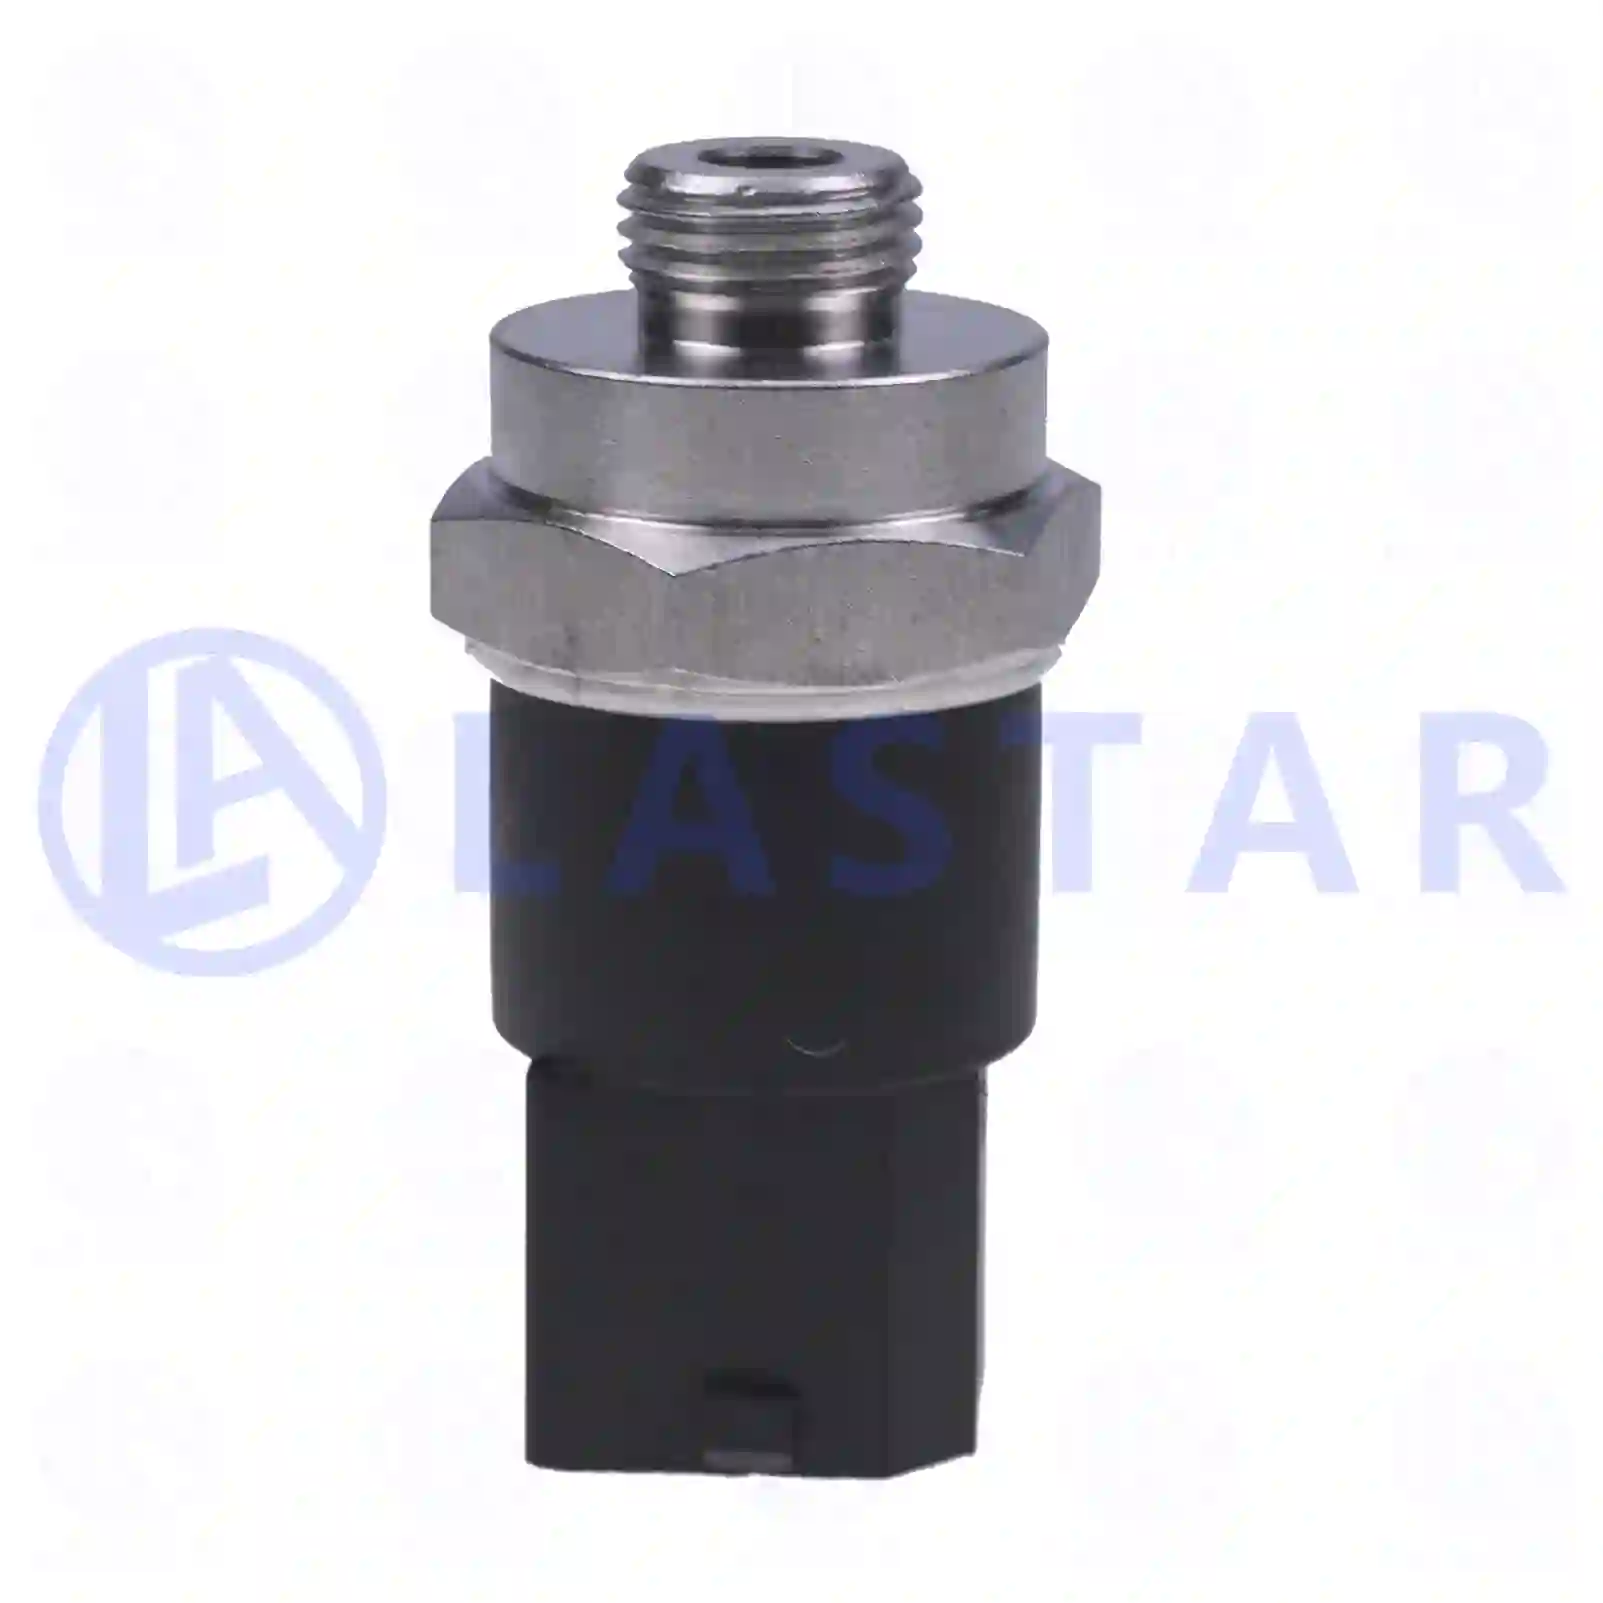  Oil pressure sensor || Lastar Spare Part | Truck Spare Parts, Auotomotive Spare Parts